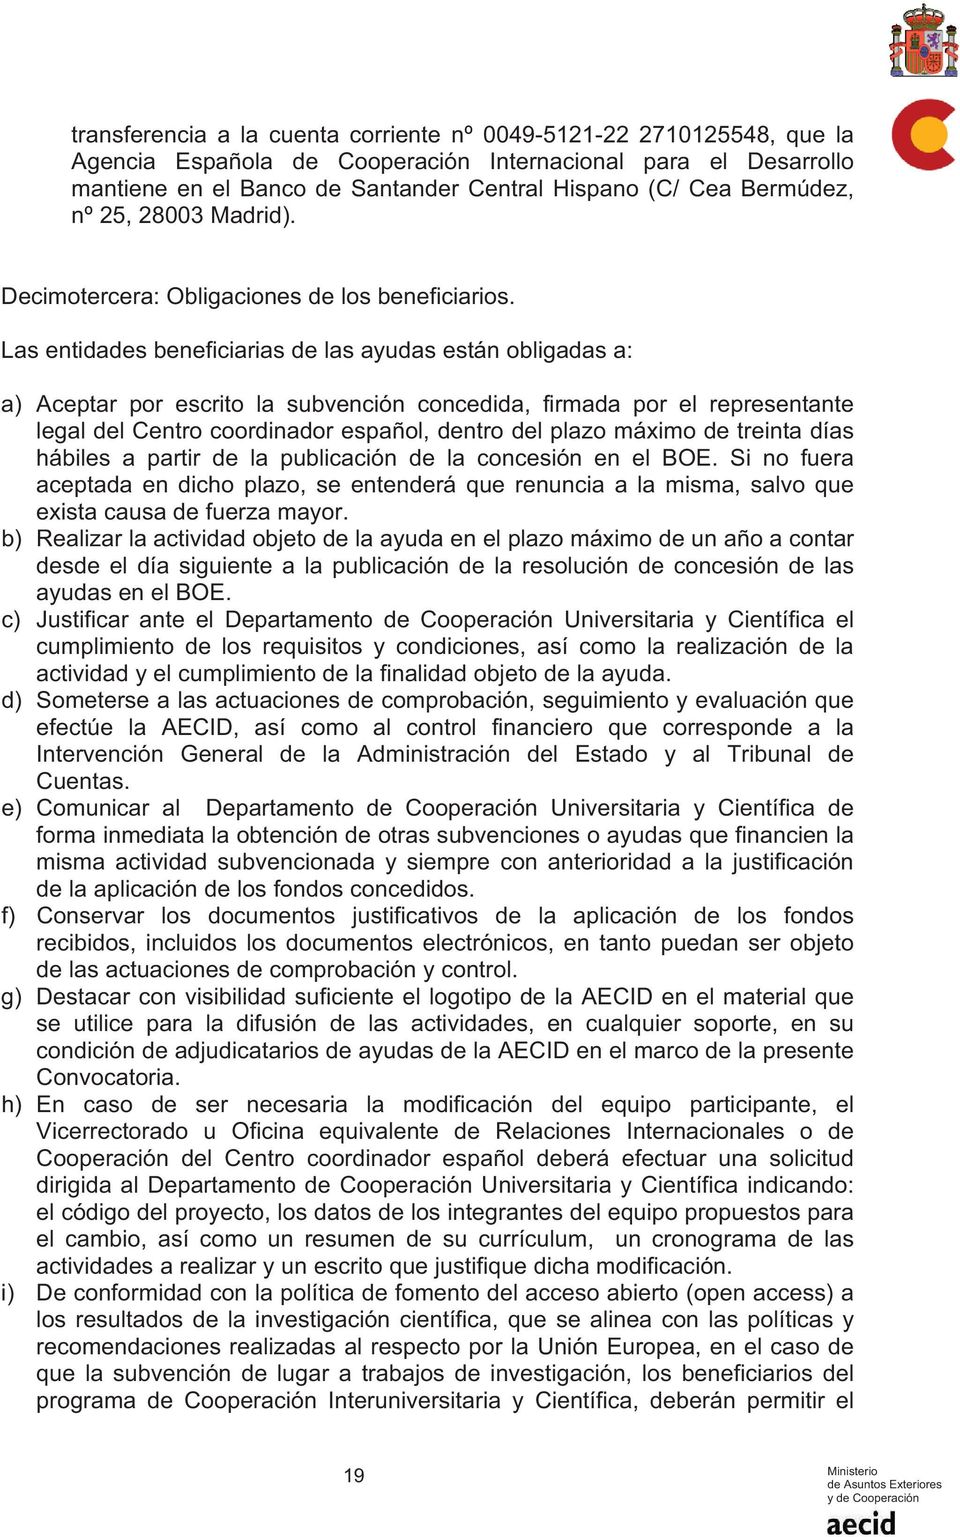 Las entidades beneficiarias de las ayudas están obligadas a: a) Aceptar por escrito la subvención concedida, firmada por el representante legal del Centro coordinador español, dentro del plazo máximo